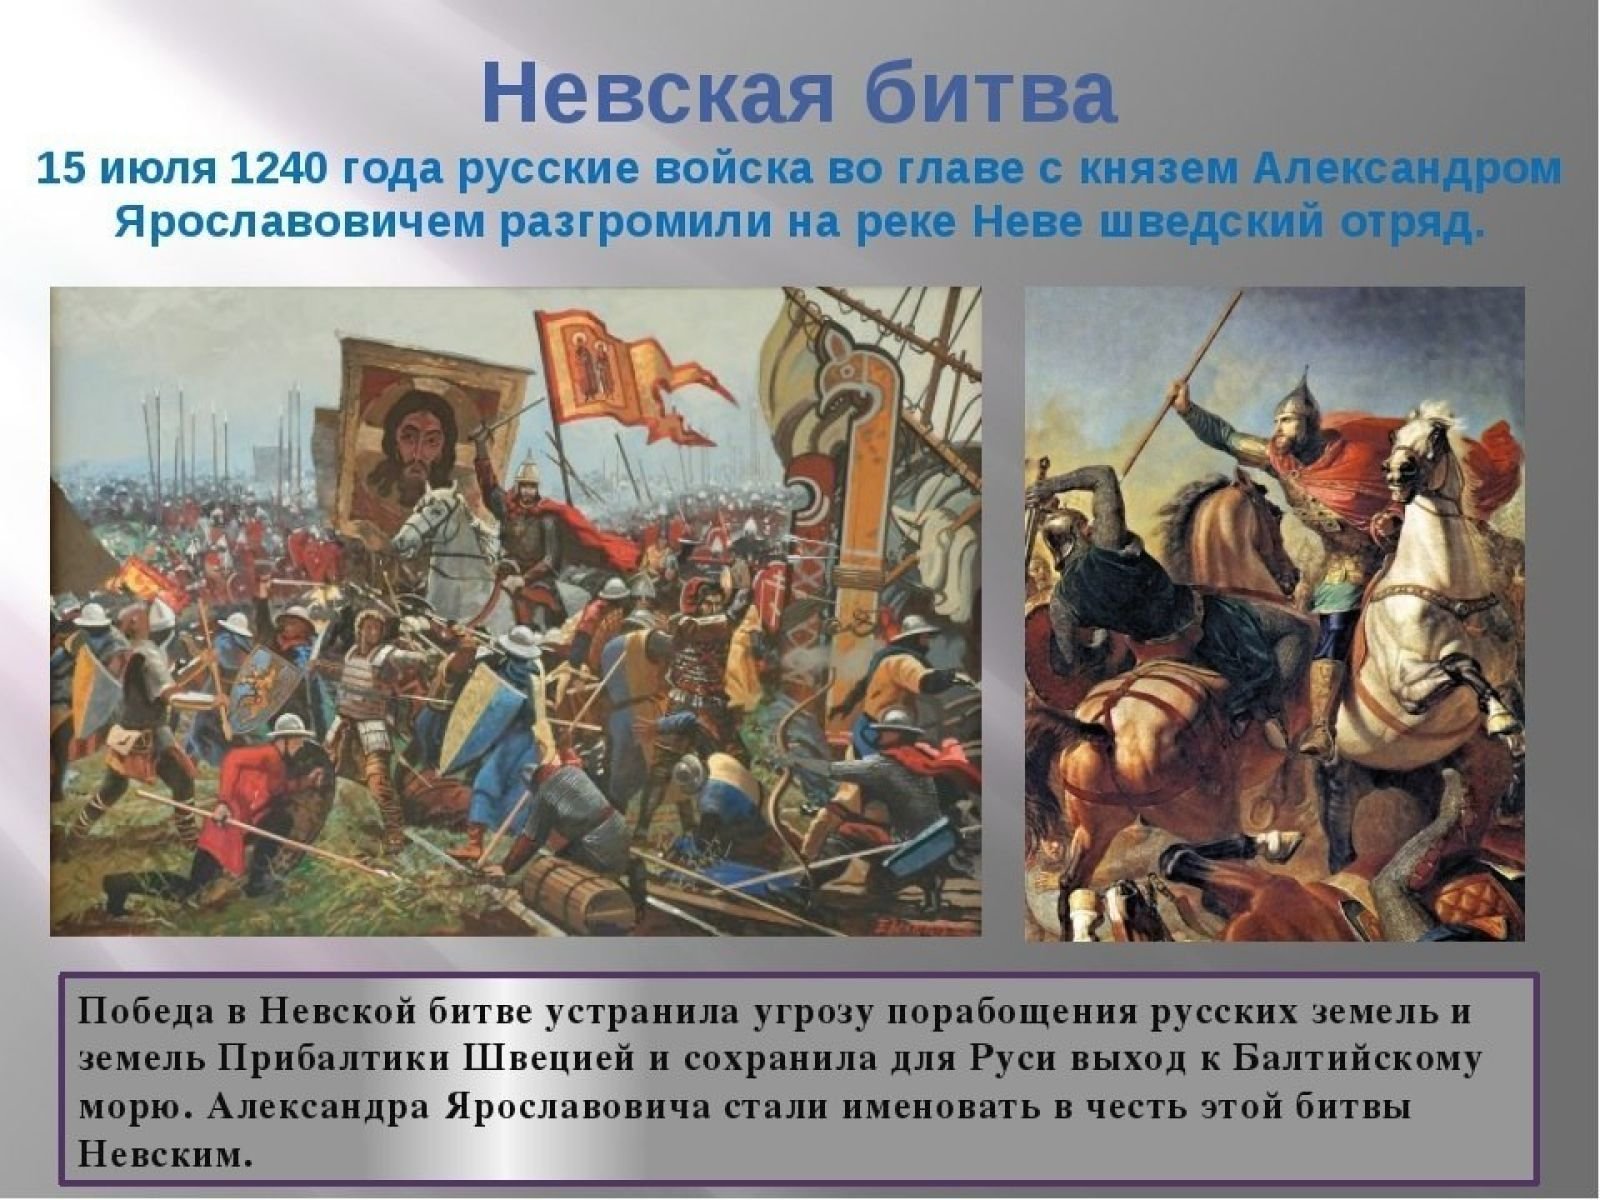 Невская битва даты и события. 15 Июля 1240 г. русские войска разбили Шведов в Невской битве. 15 Июля 1240 года состоялась Невская битва..